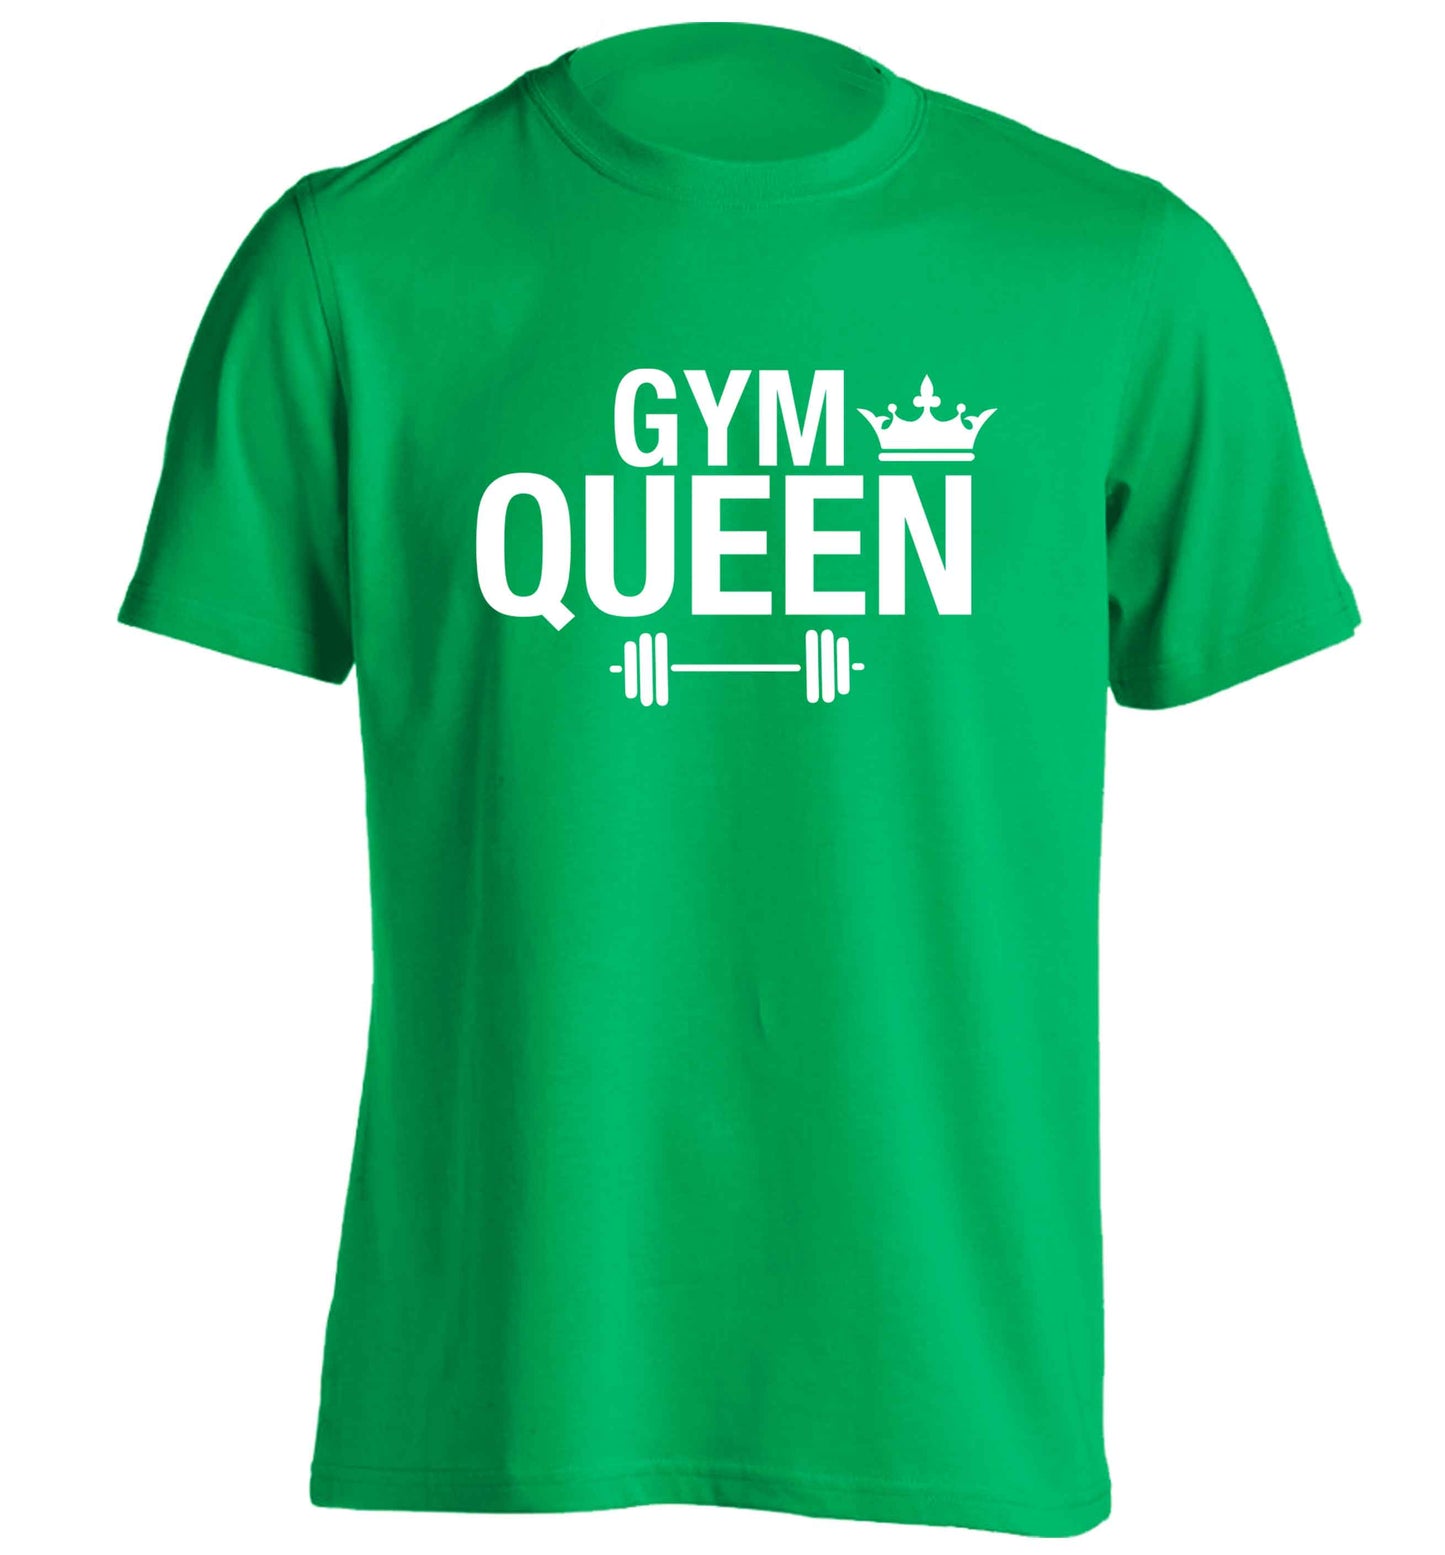 Gym queen adults unisex green Tshirt 2XL